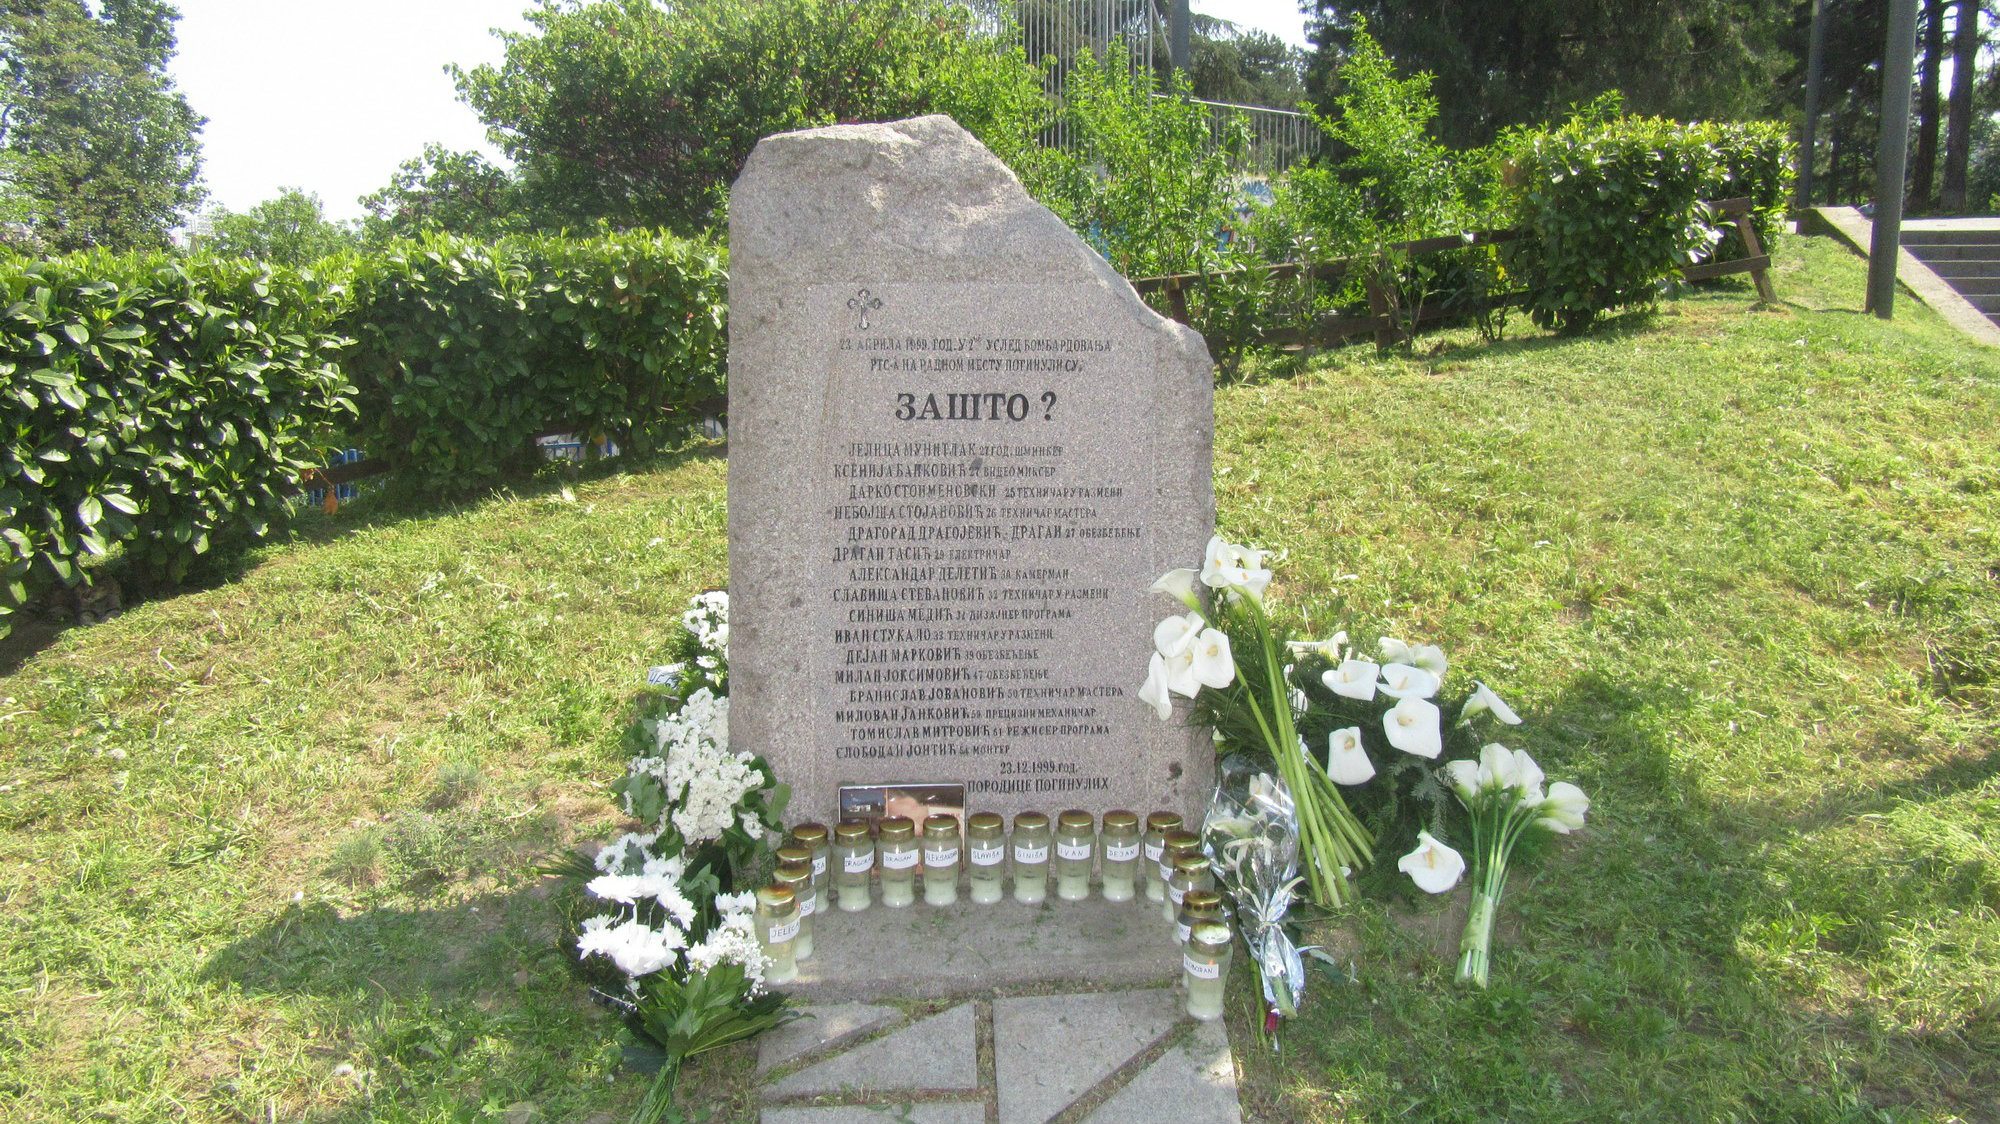 U Srbiji 301 spomenik posvećen ratovima devedesetih i NATO bombardovanju 1